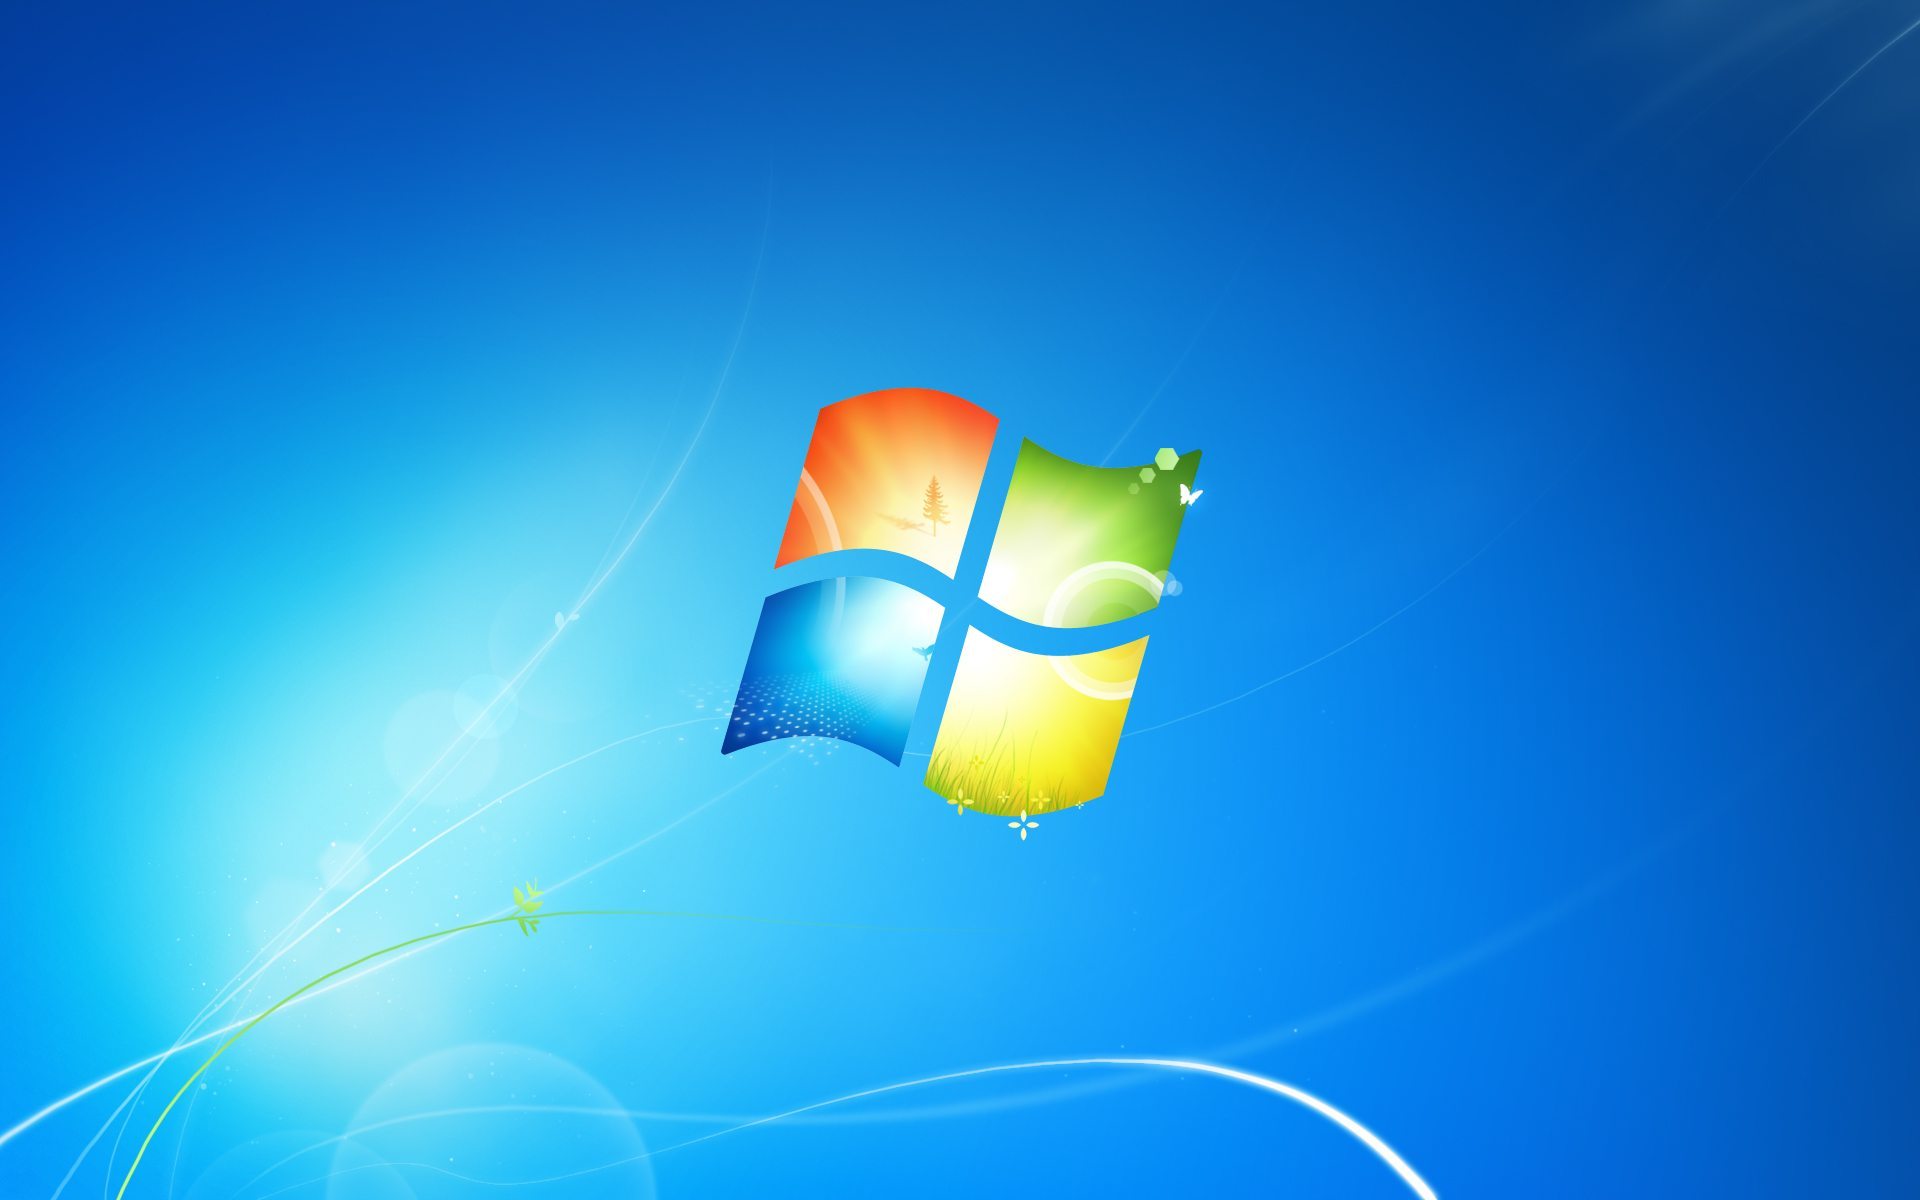 How to Turn Off Sticky Keys Windows 10?